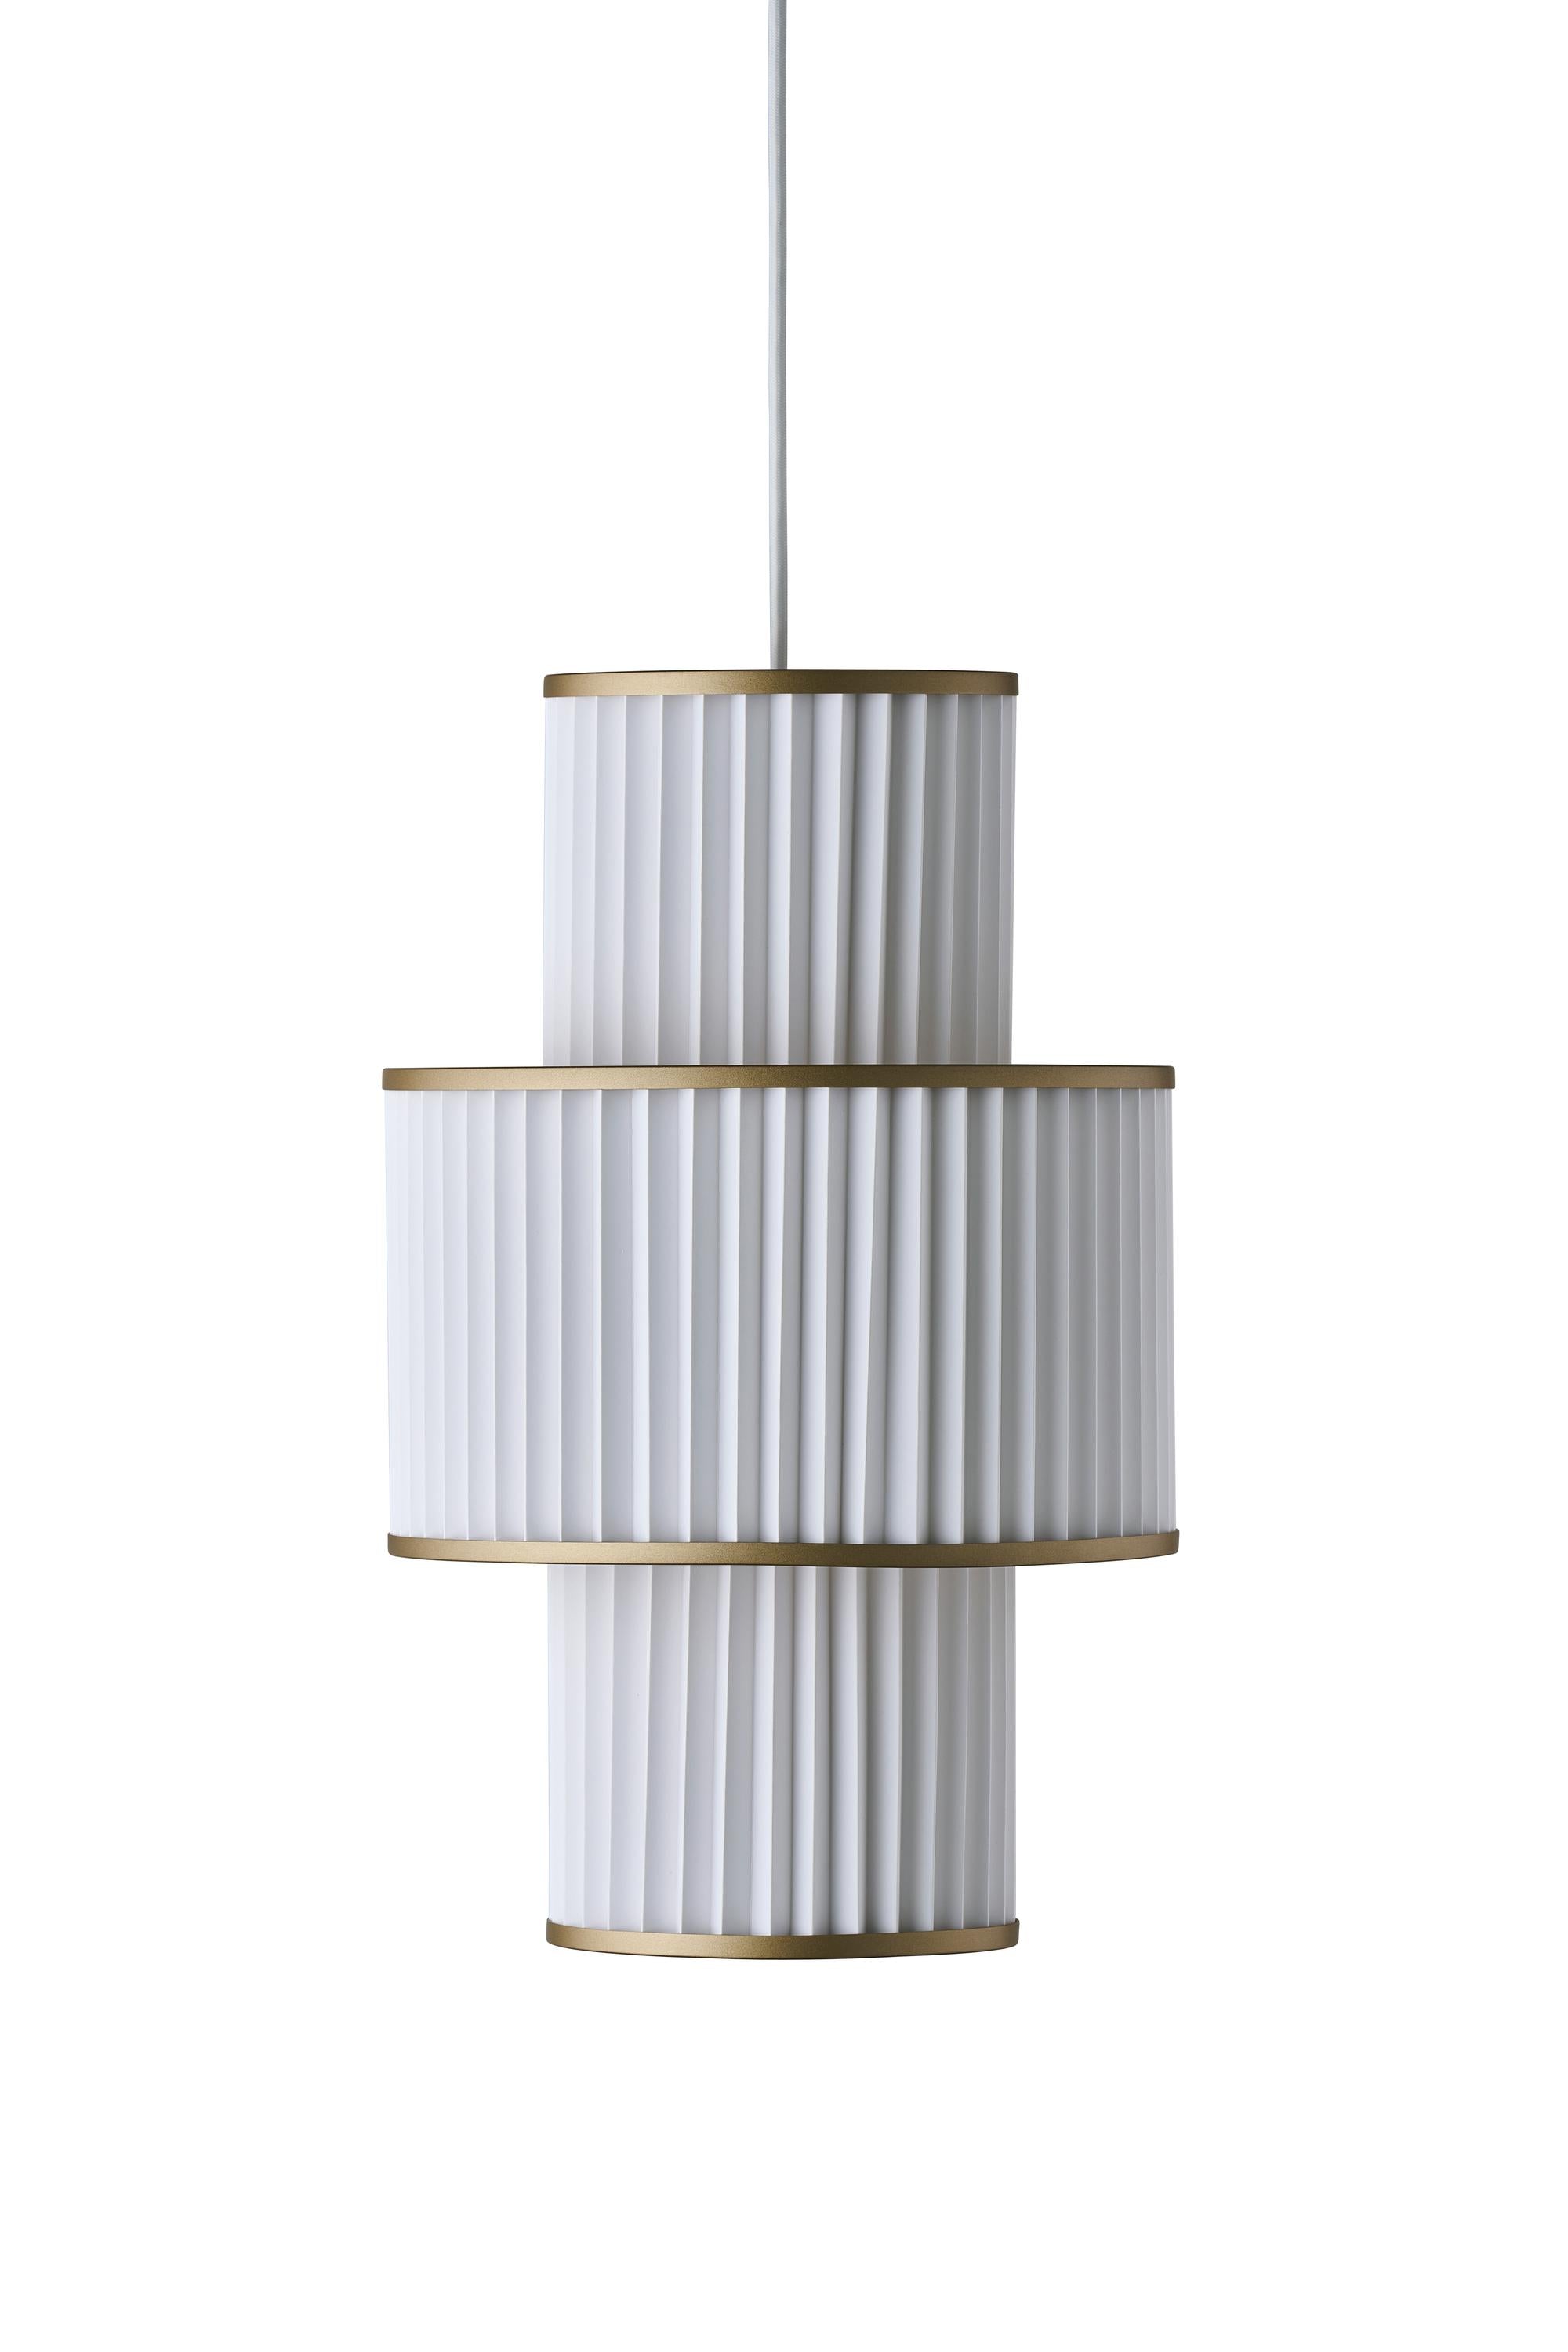 Le Klint Plivello -ophængslampe Gylden/hvid med 3 nuancer (S M S)